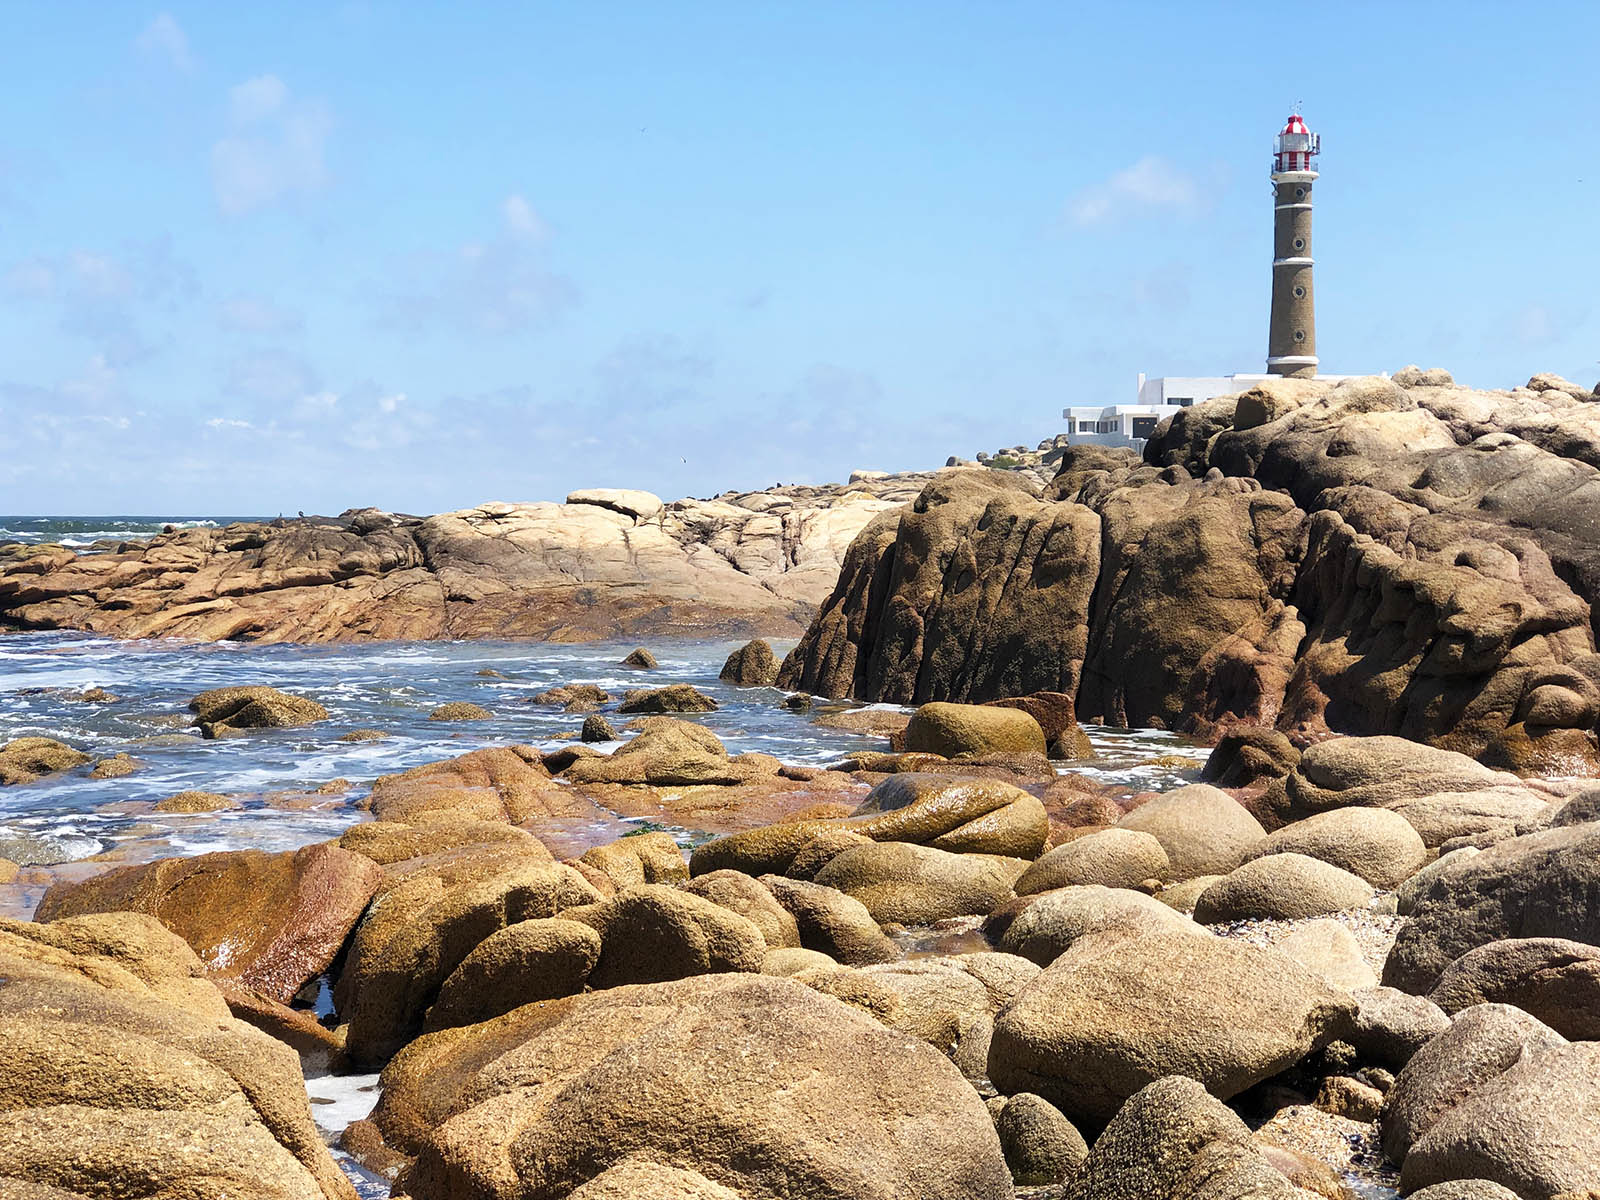 The lighthouse of Cabo Polonio. Credit: Carolina Valenzuela